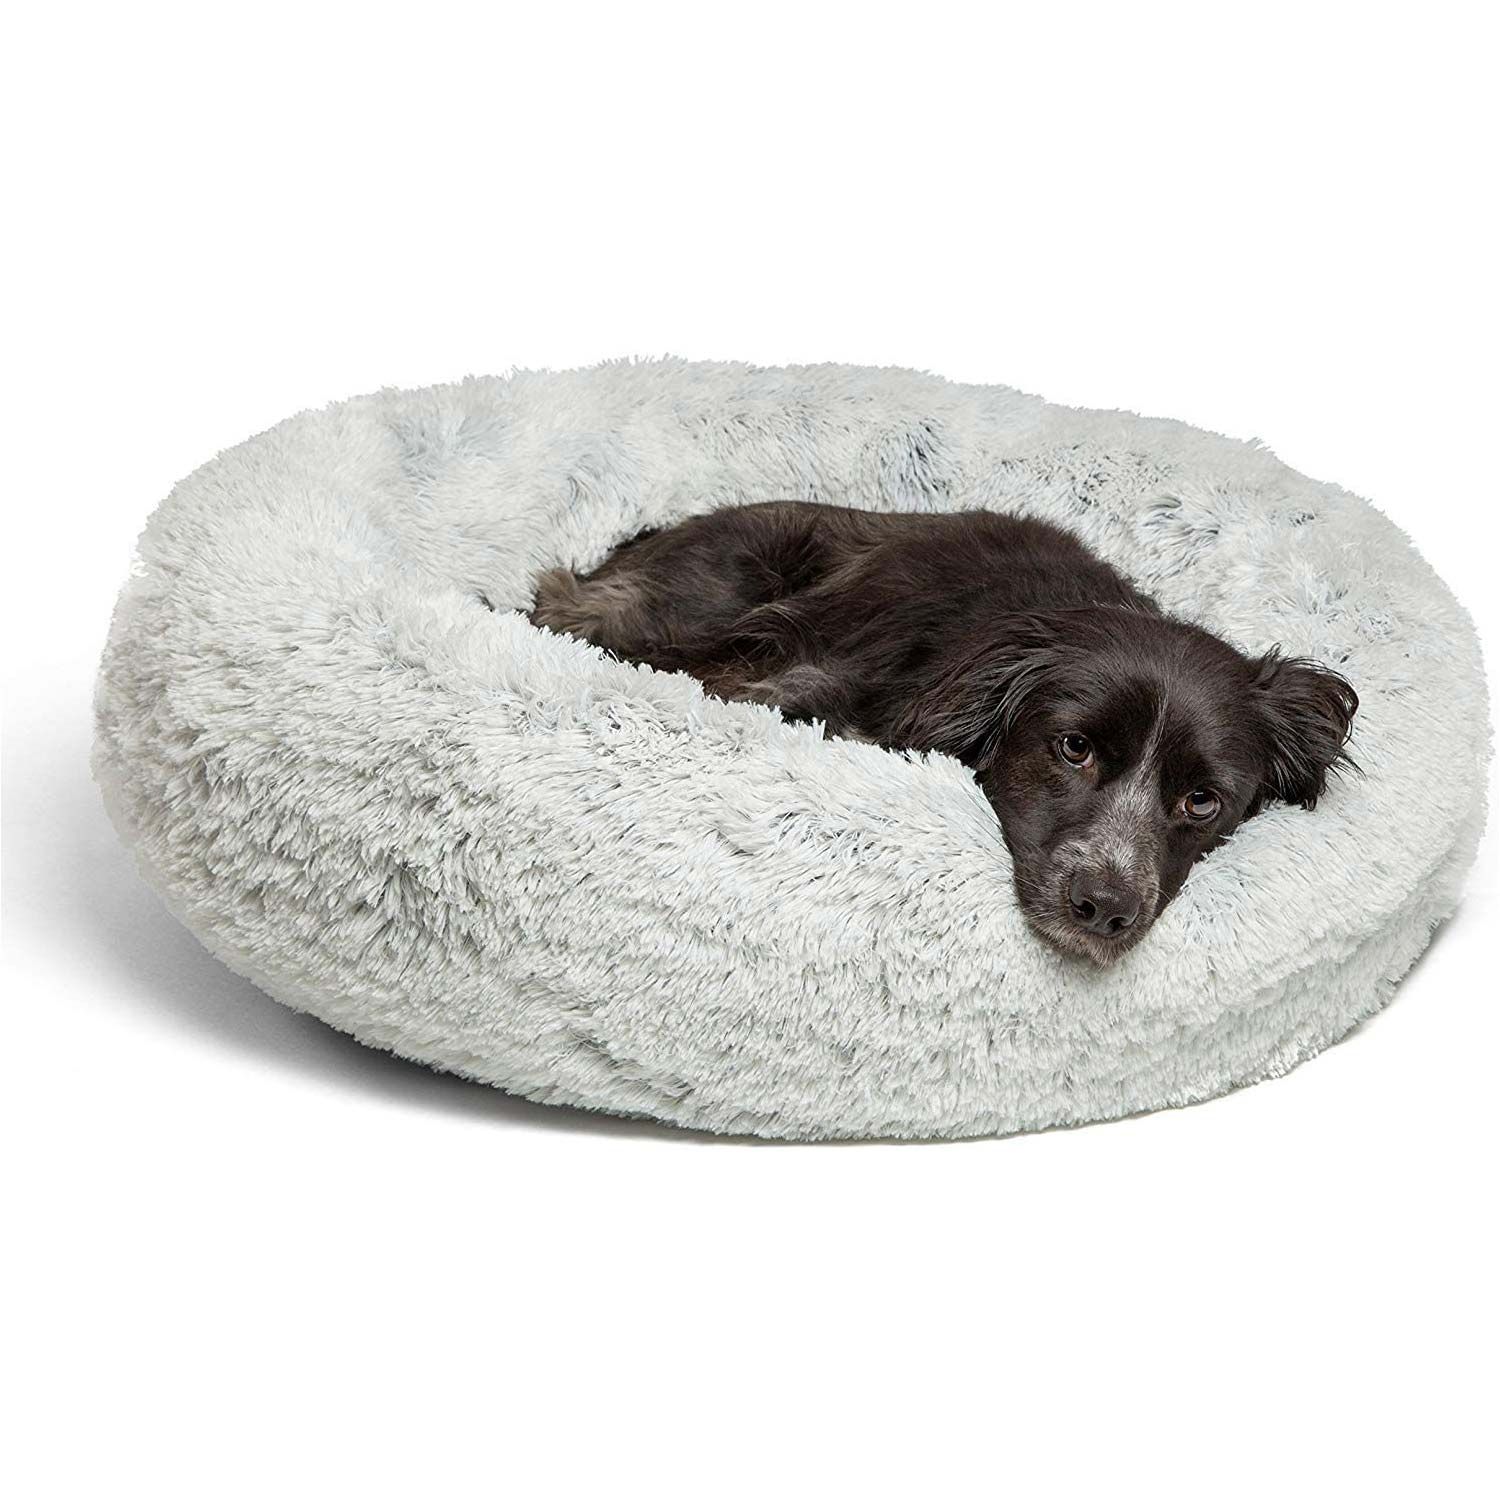 Mascotas: así es la cama antiestrés que tu perro necesita